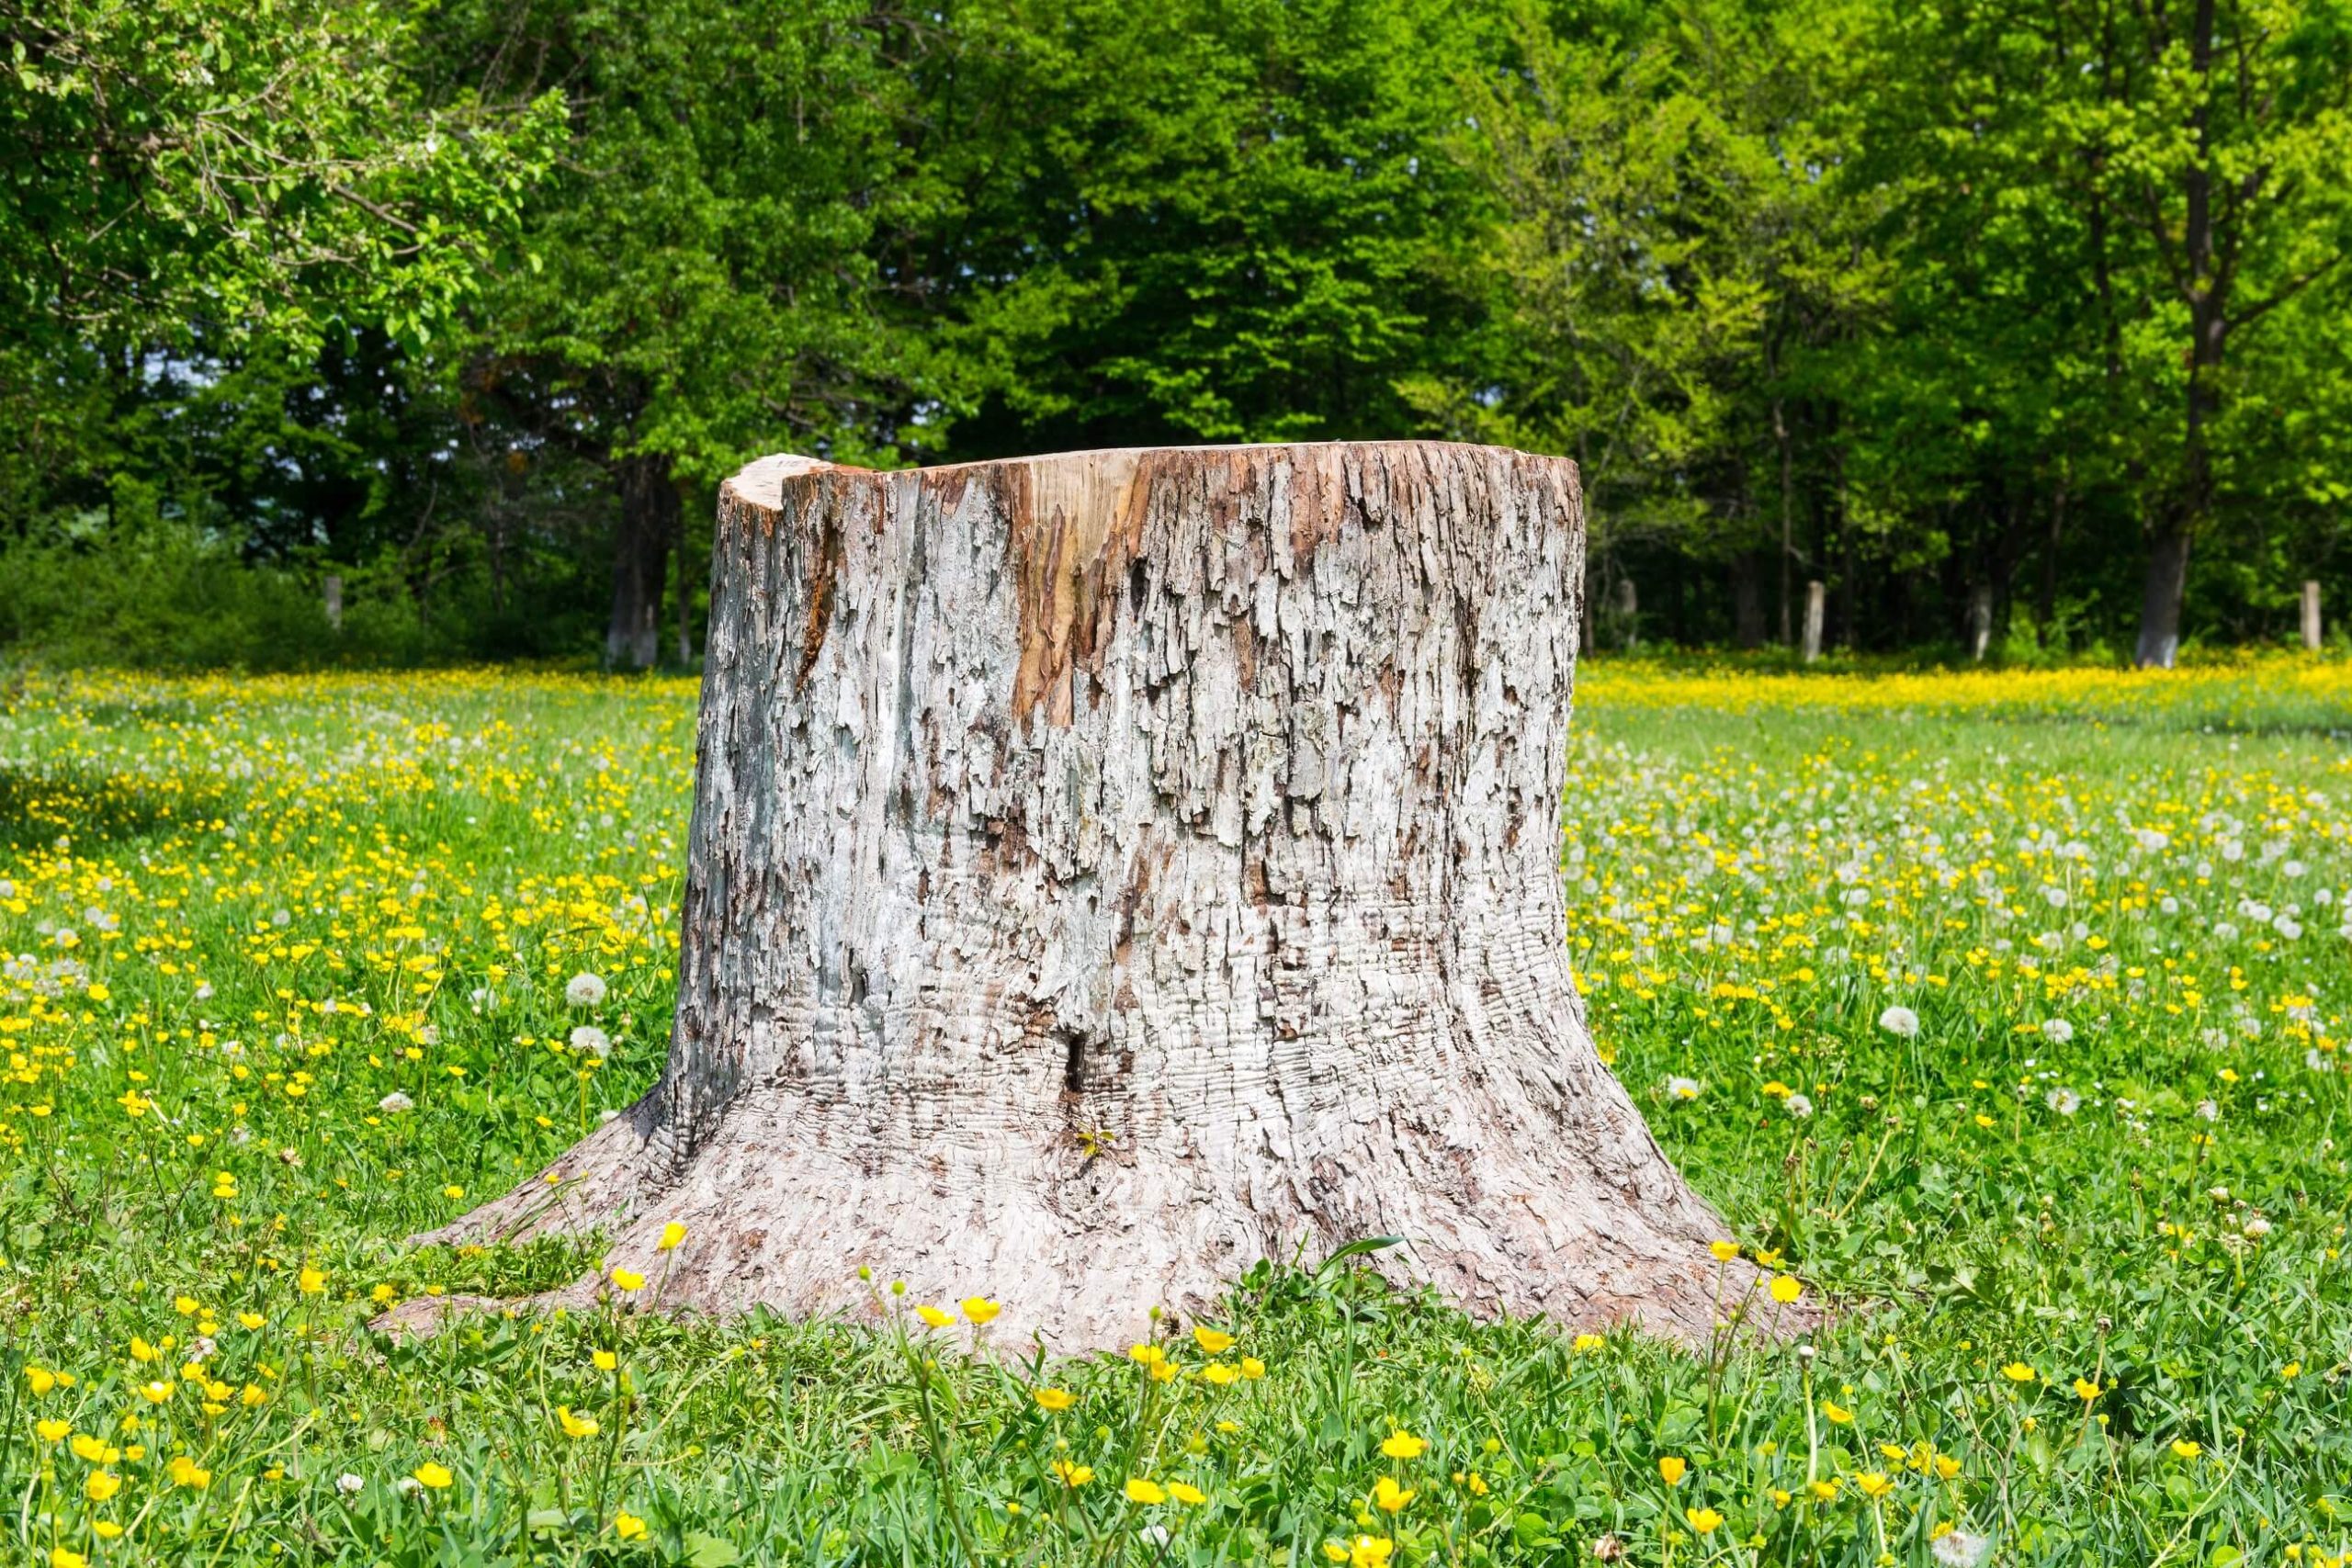 A photo of a tree stump